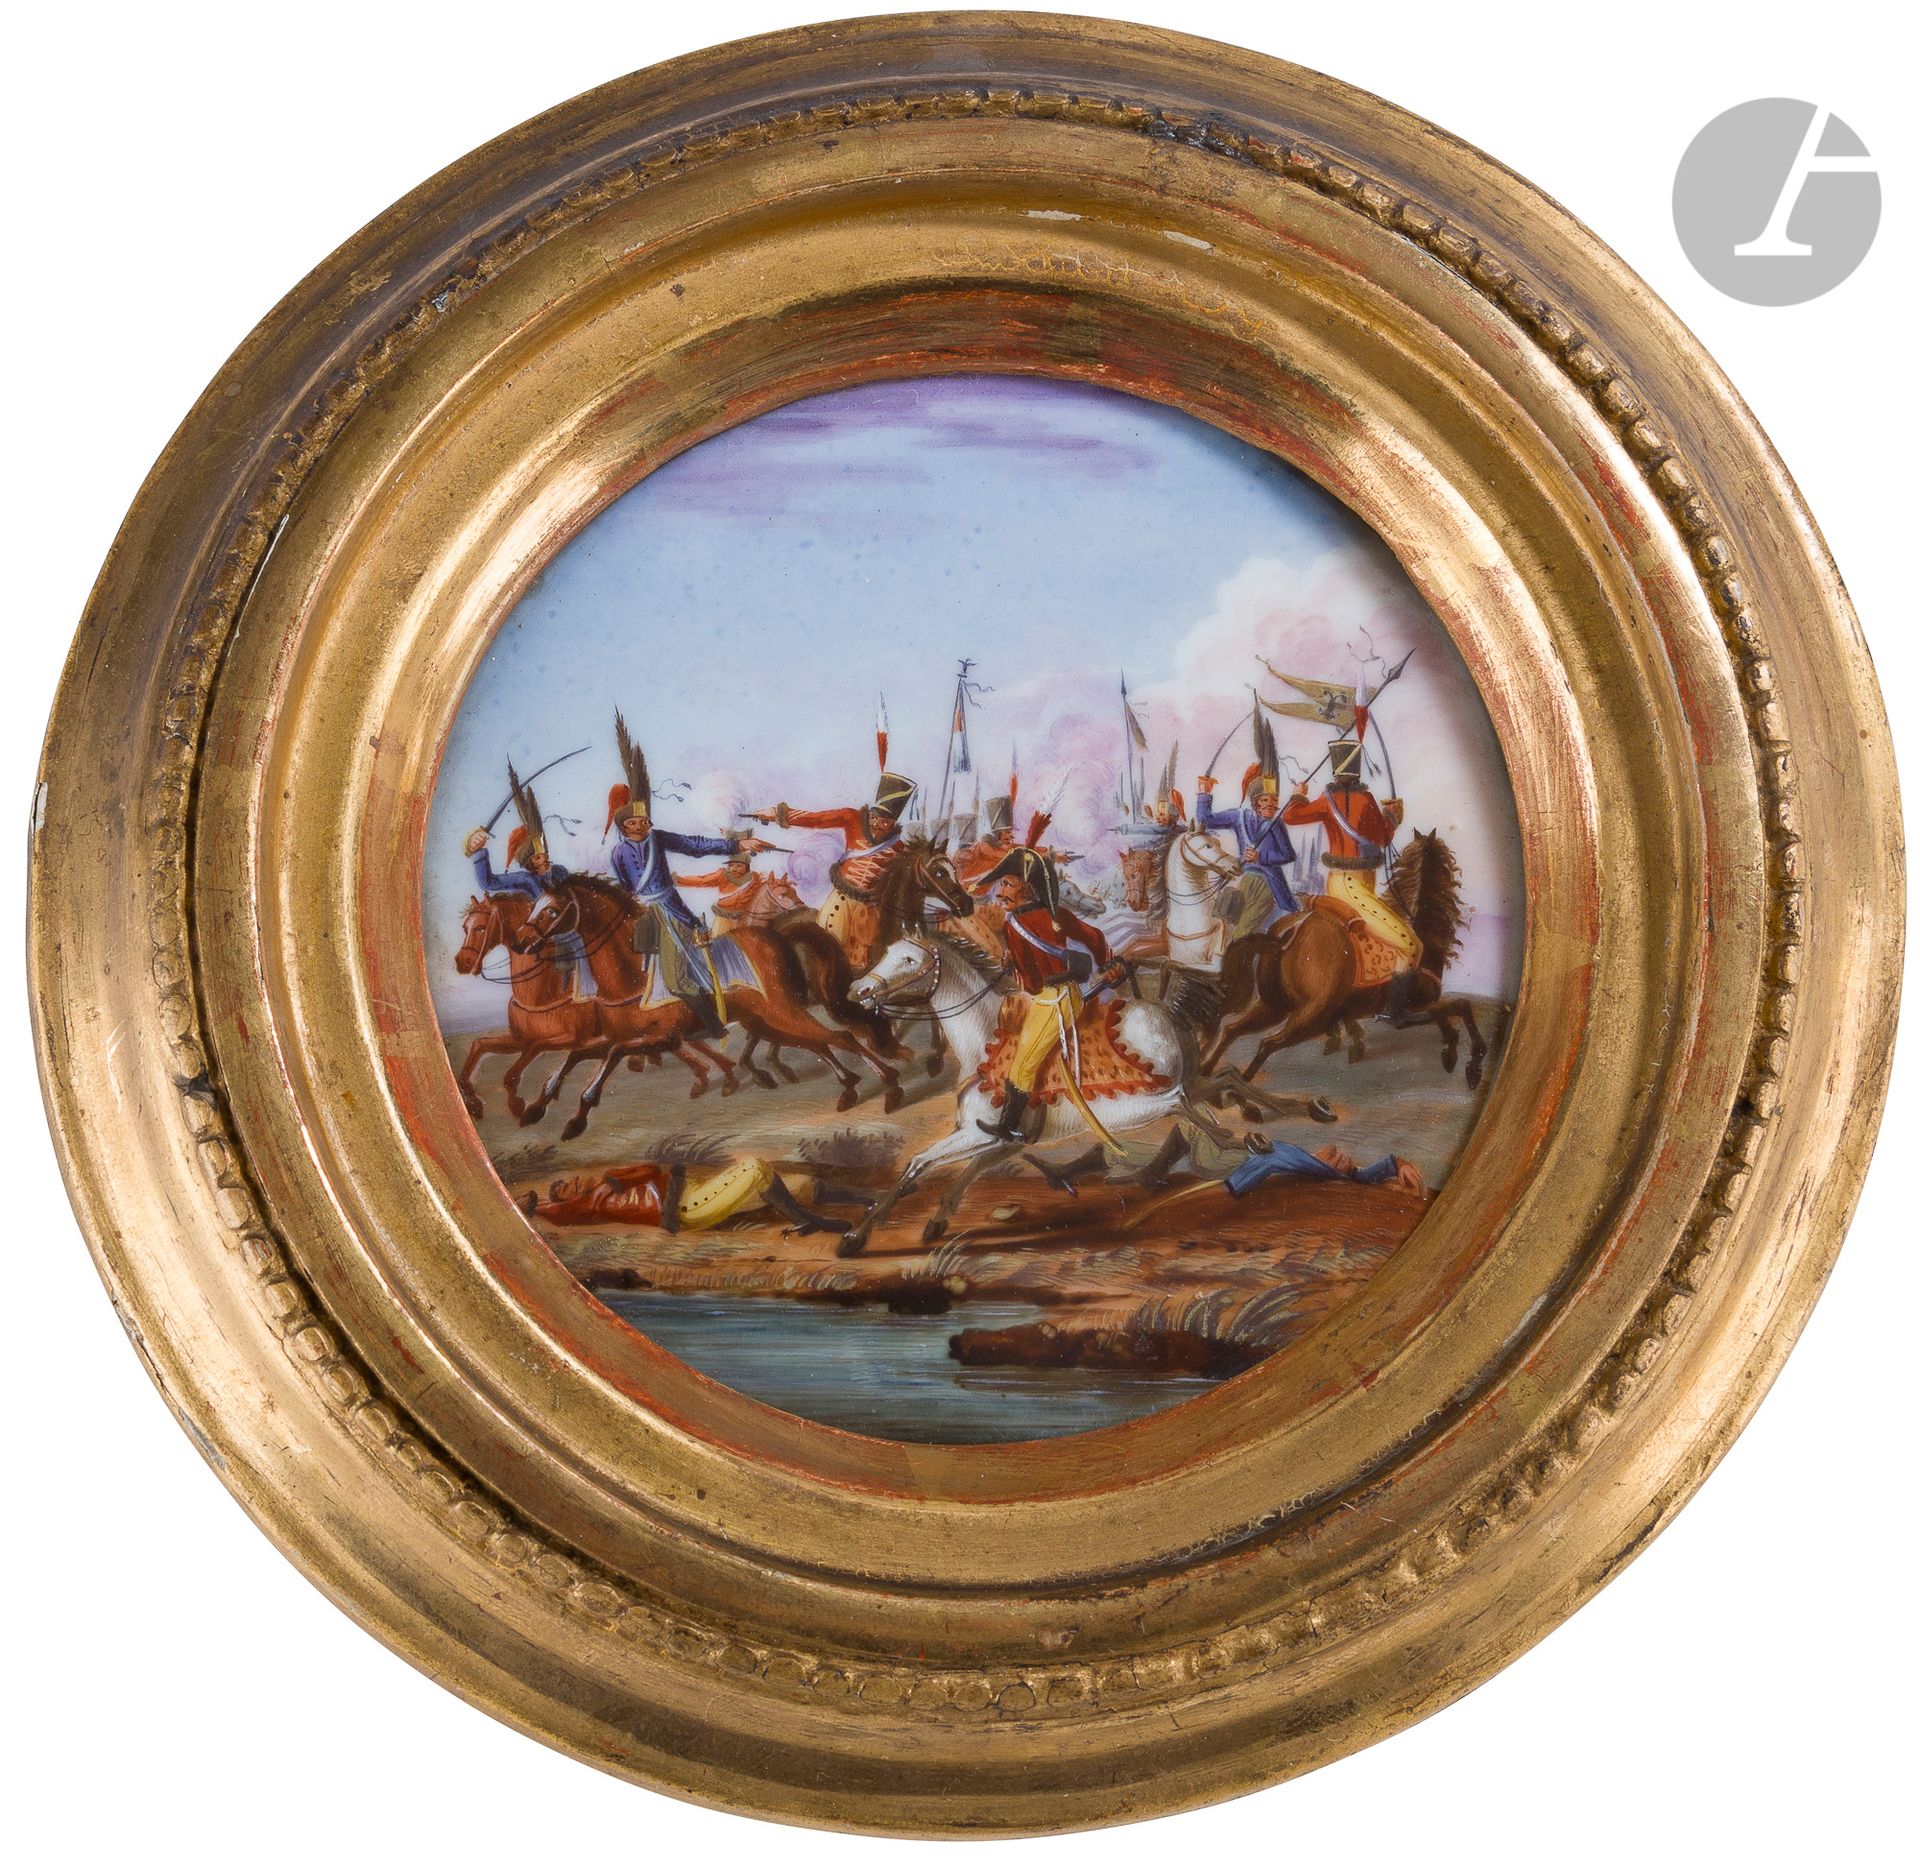 Null 19世纪初的法国学校。
法国轻骑兵和奥地利骑兵之间的战斗。第一帝国
时期彩绘瓷圆盘。
直径：9,5
厘米黄金
框架
。
A.B.E.